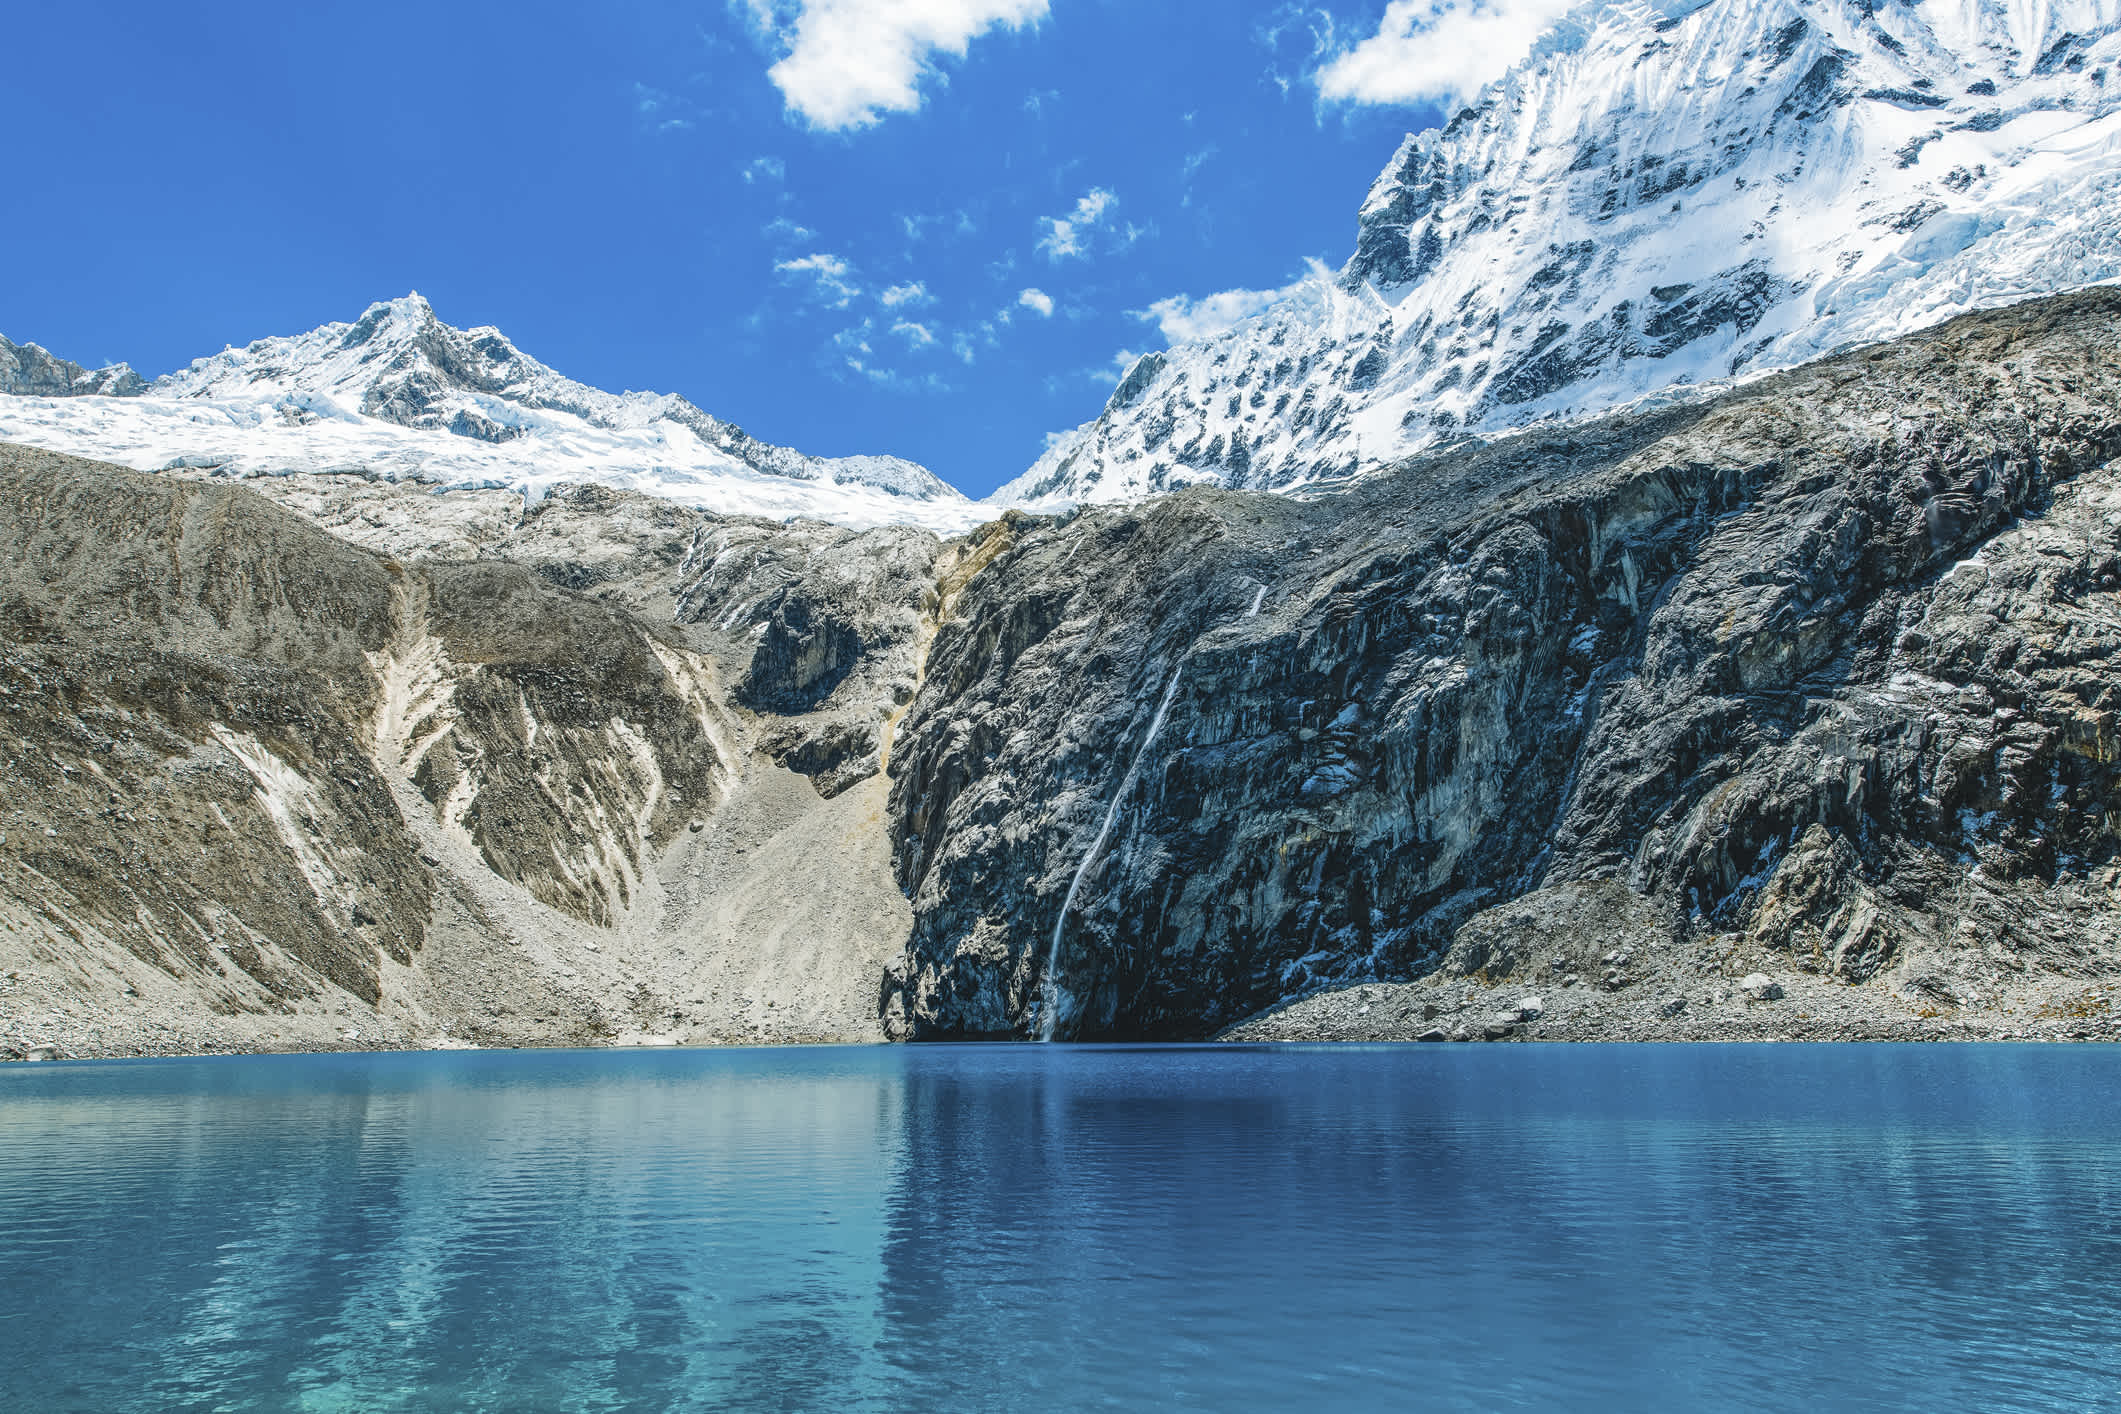 Kristallklarer Gletschersee mit Wasserfall hoch oben in den Anden